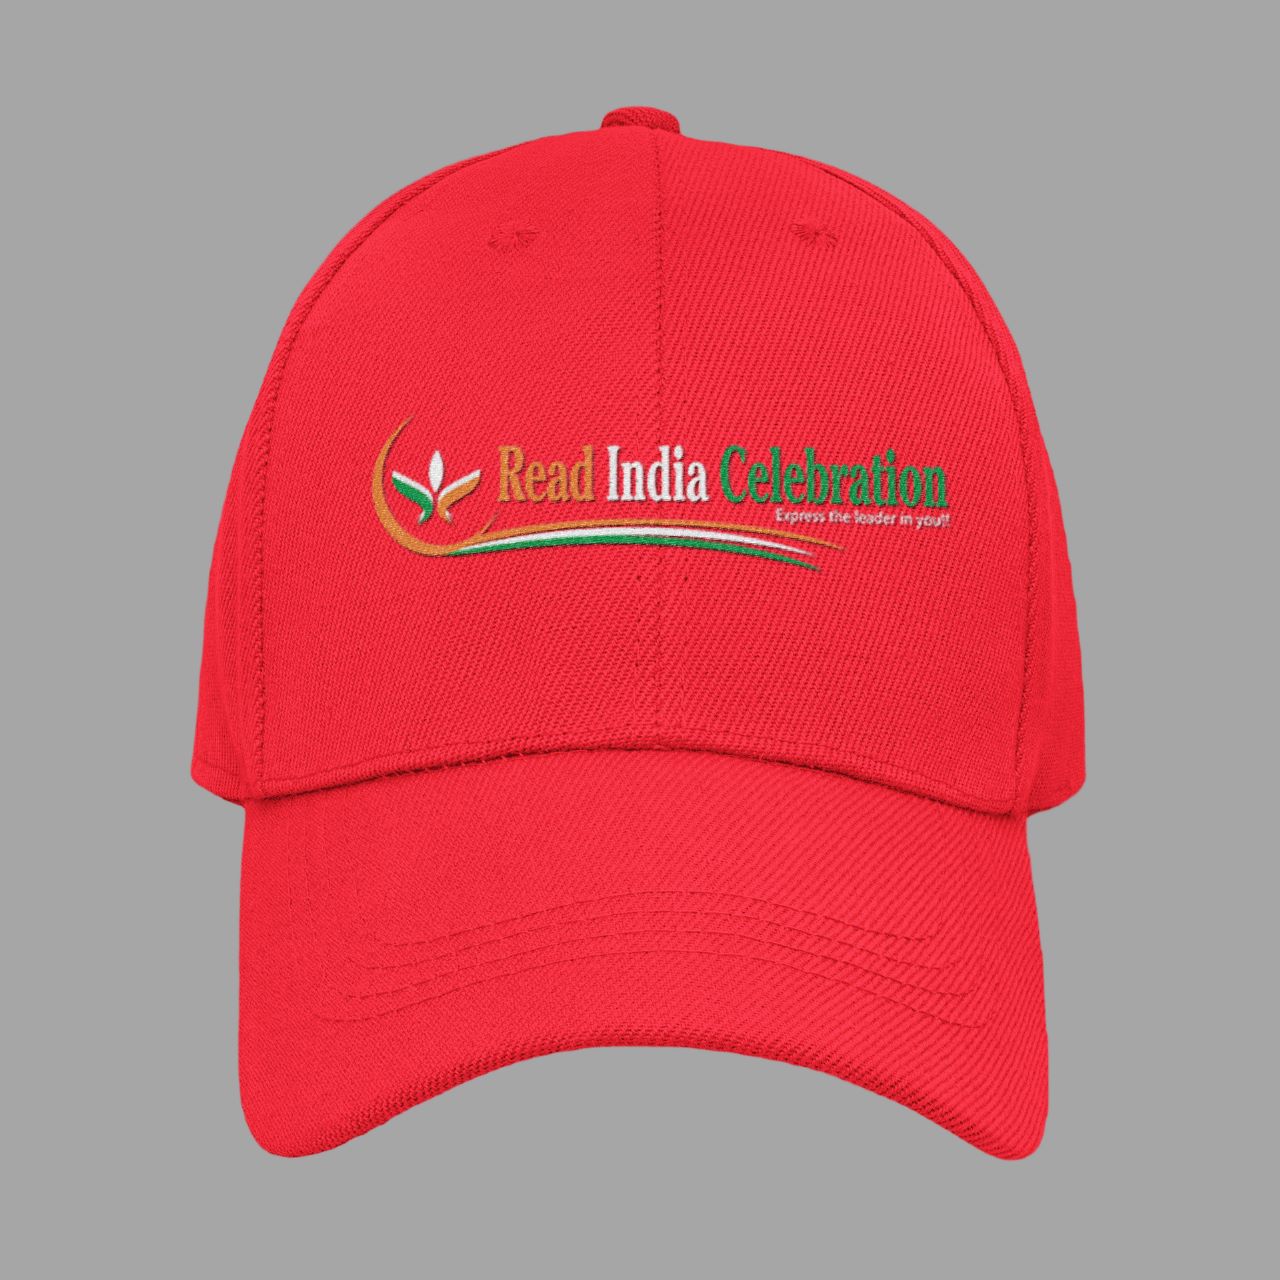 Read India Celebration CAP